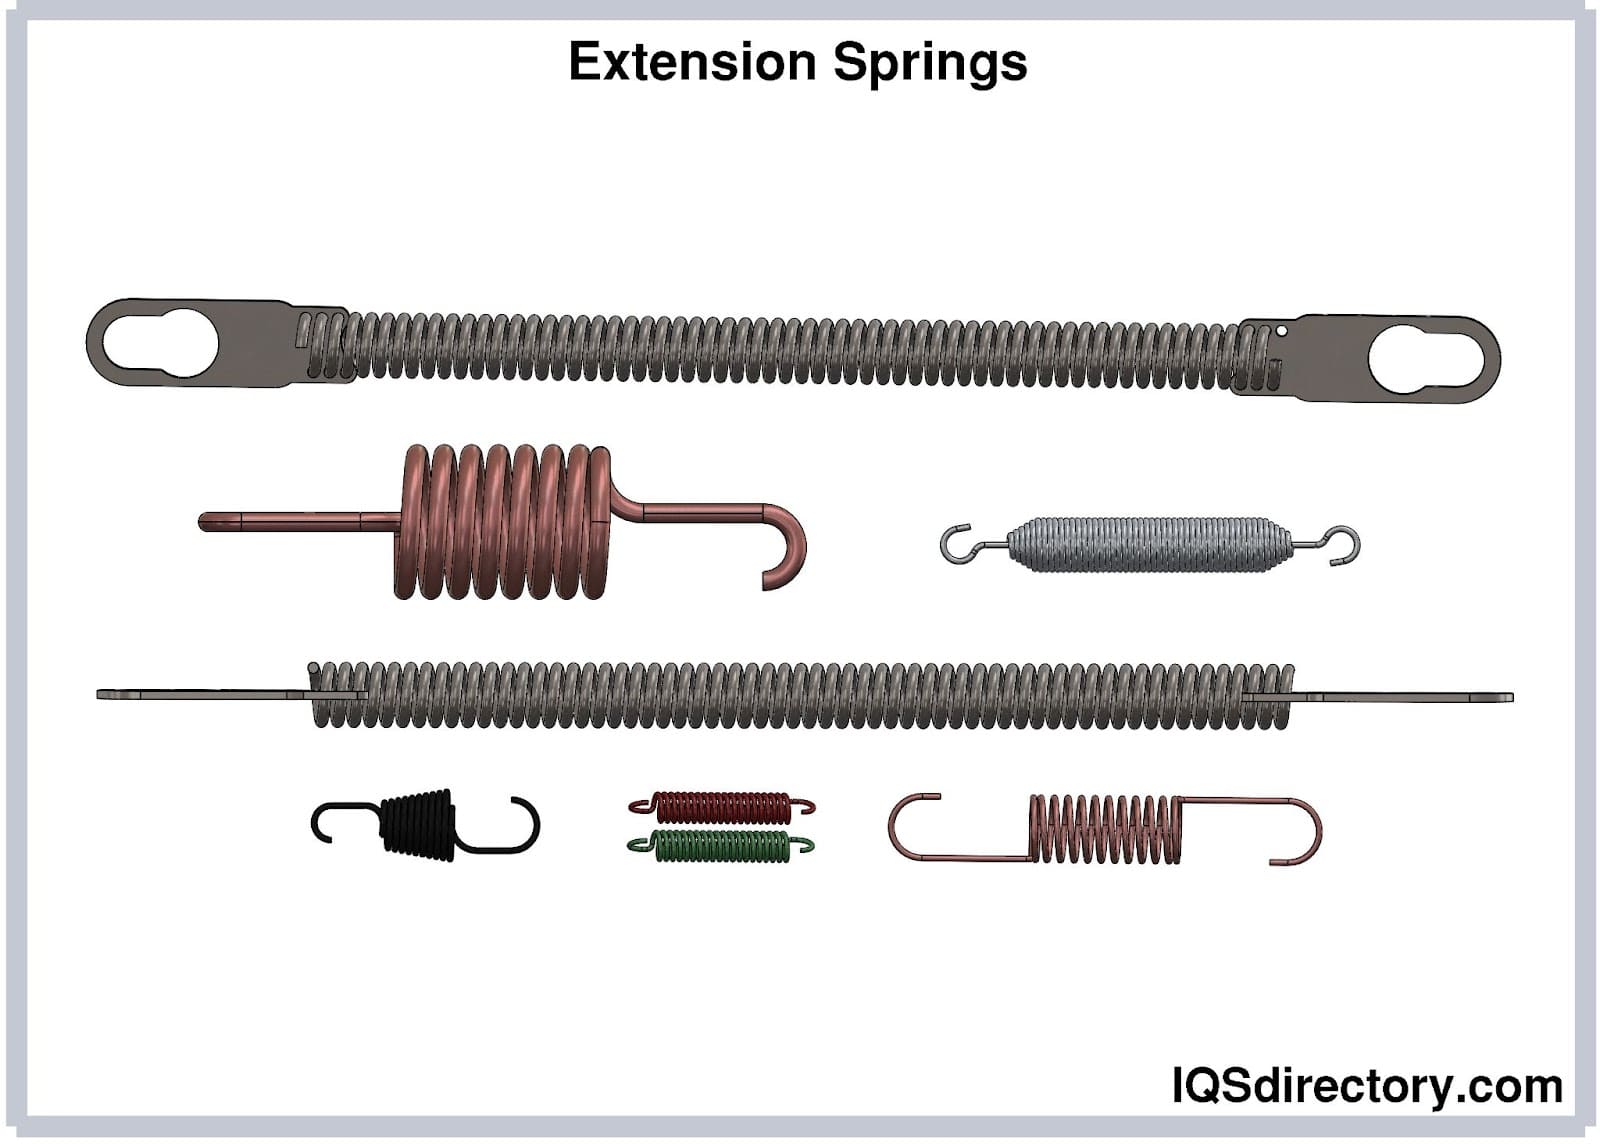 Extension Spring Hook Styles: Machine Hooks vs. Side Loops